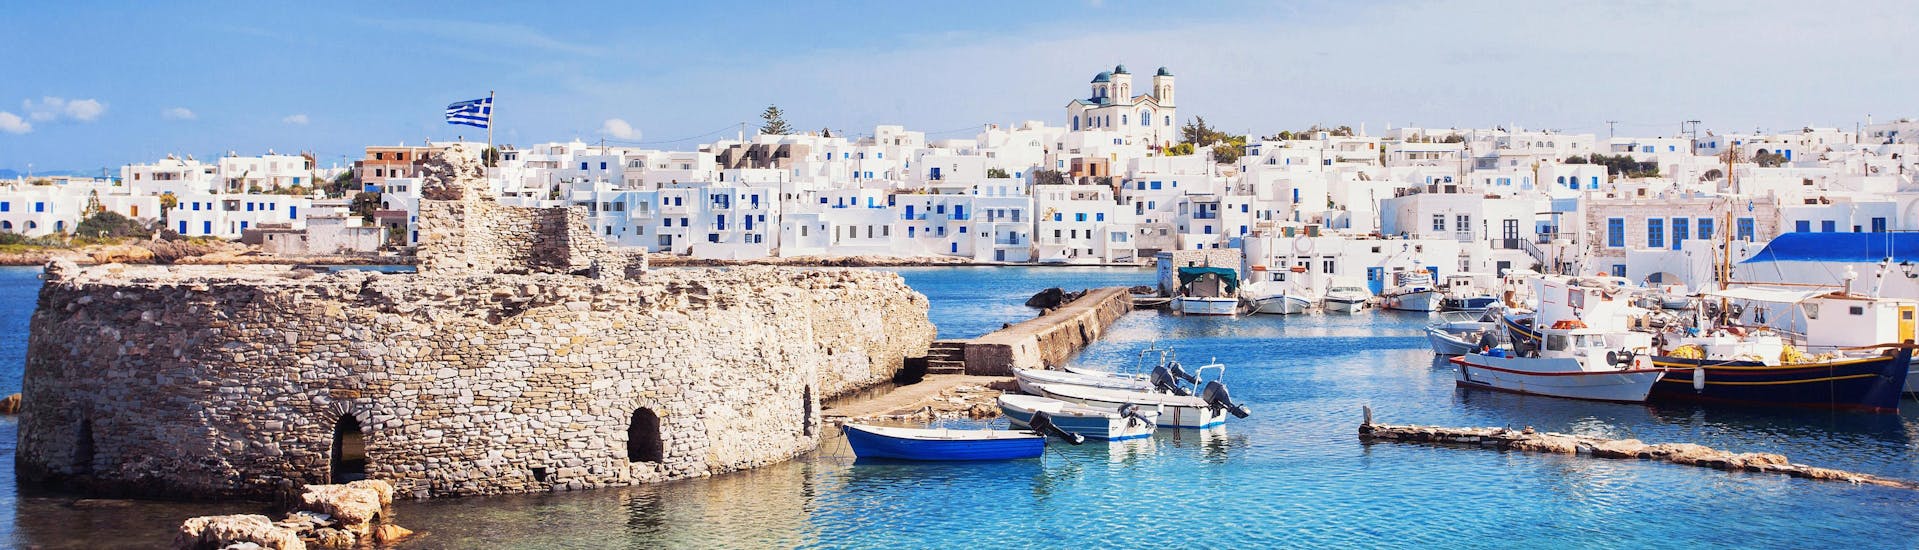 Une image du port de Naxos, une destination populaire pour les personnes qui veulent faire des activités nautiques en Grèce.